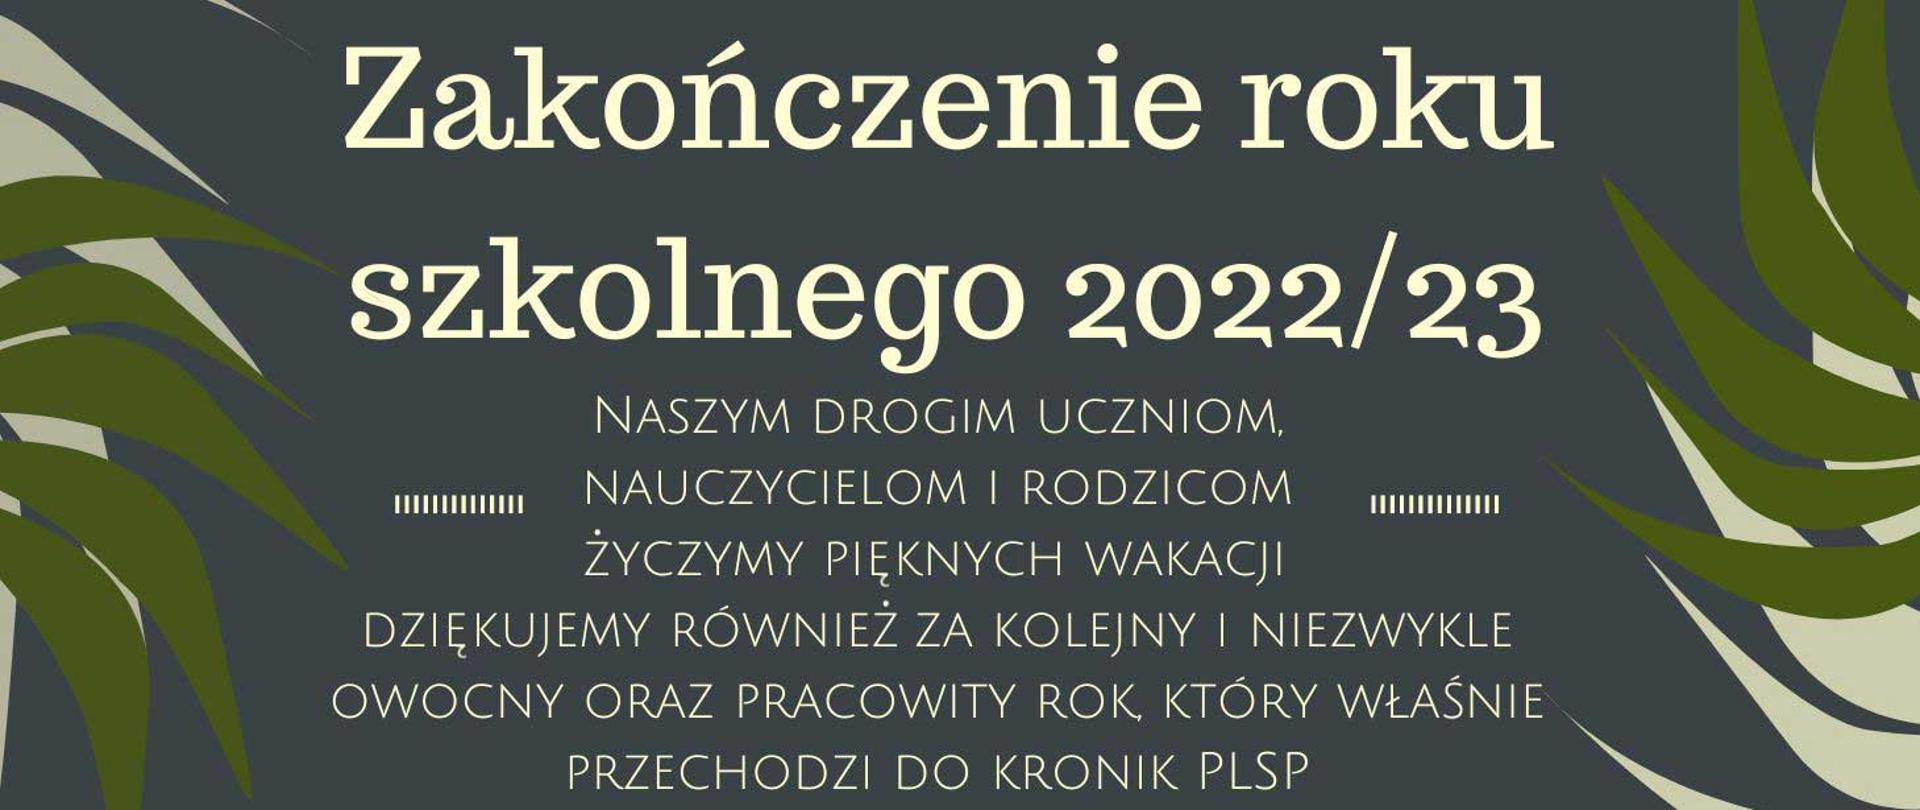 2022/23